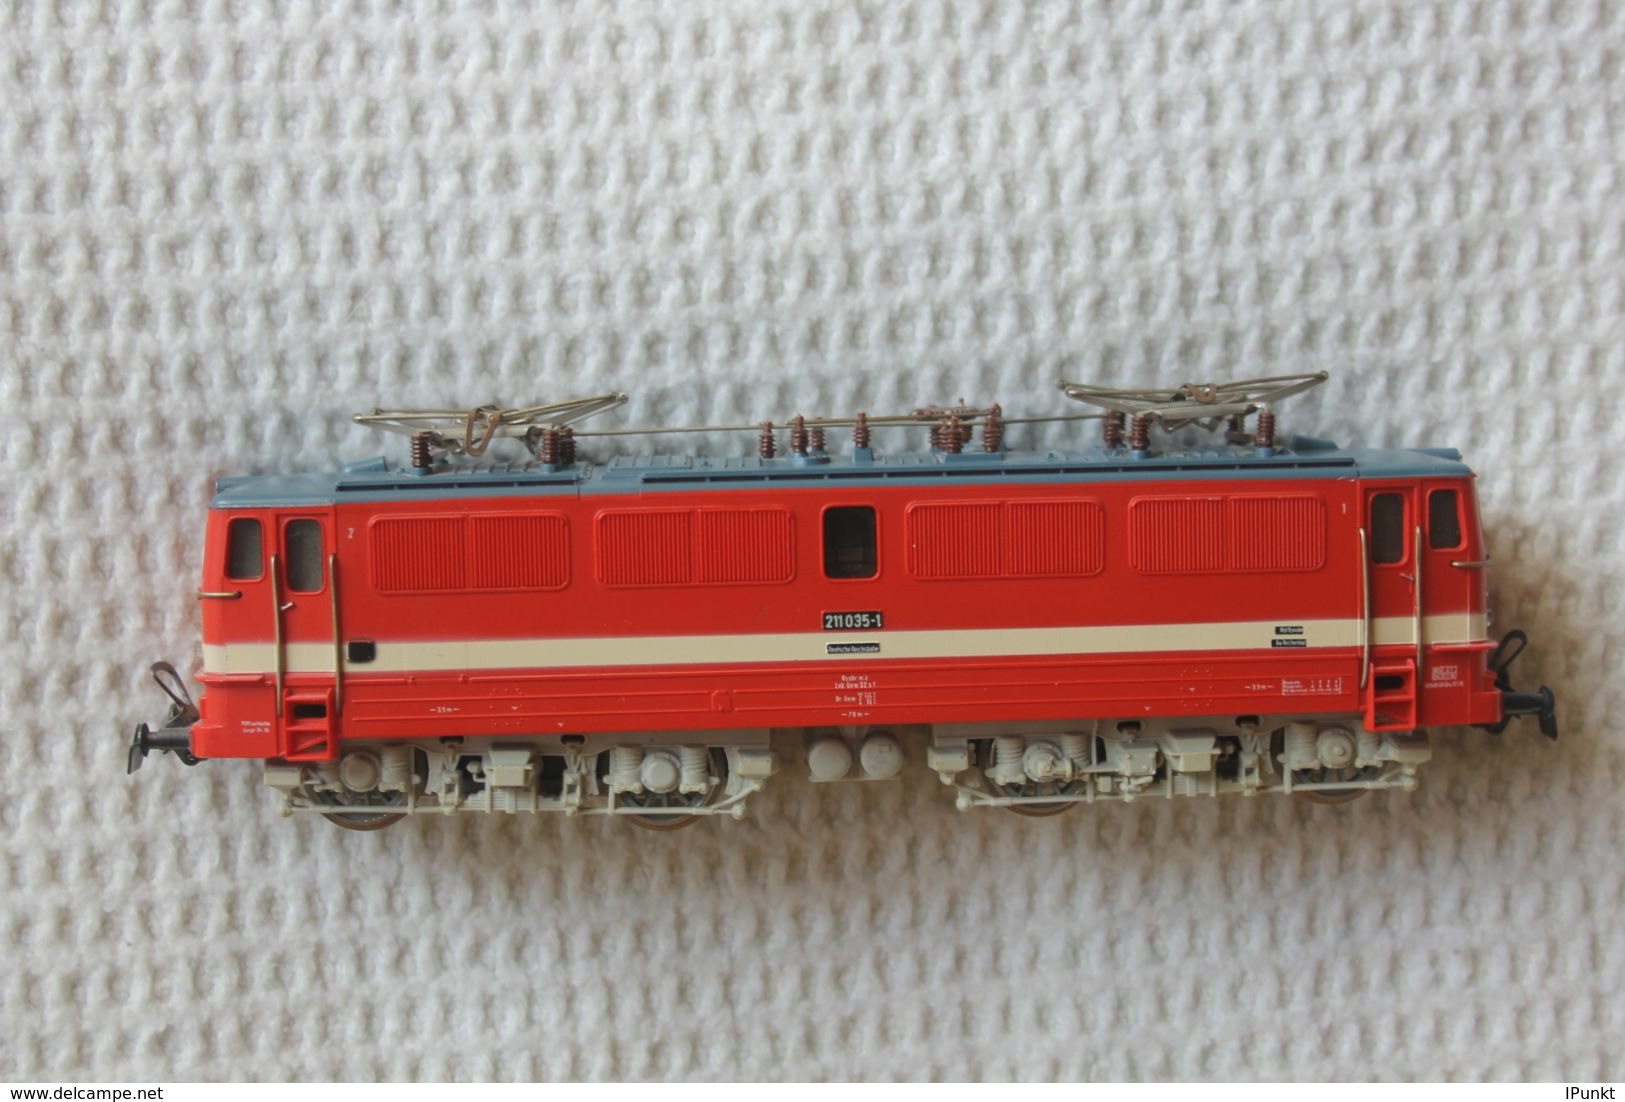 Schnellzuglokomotive Der Deutsche Reichsbahn; Baureihe BR 211 / E 11; PIKO; Epoche IV; Neu In OVP - Locomotives